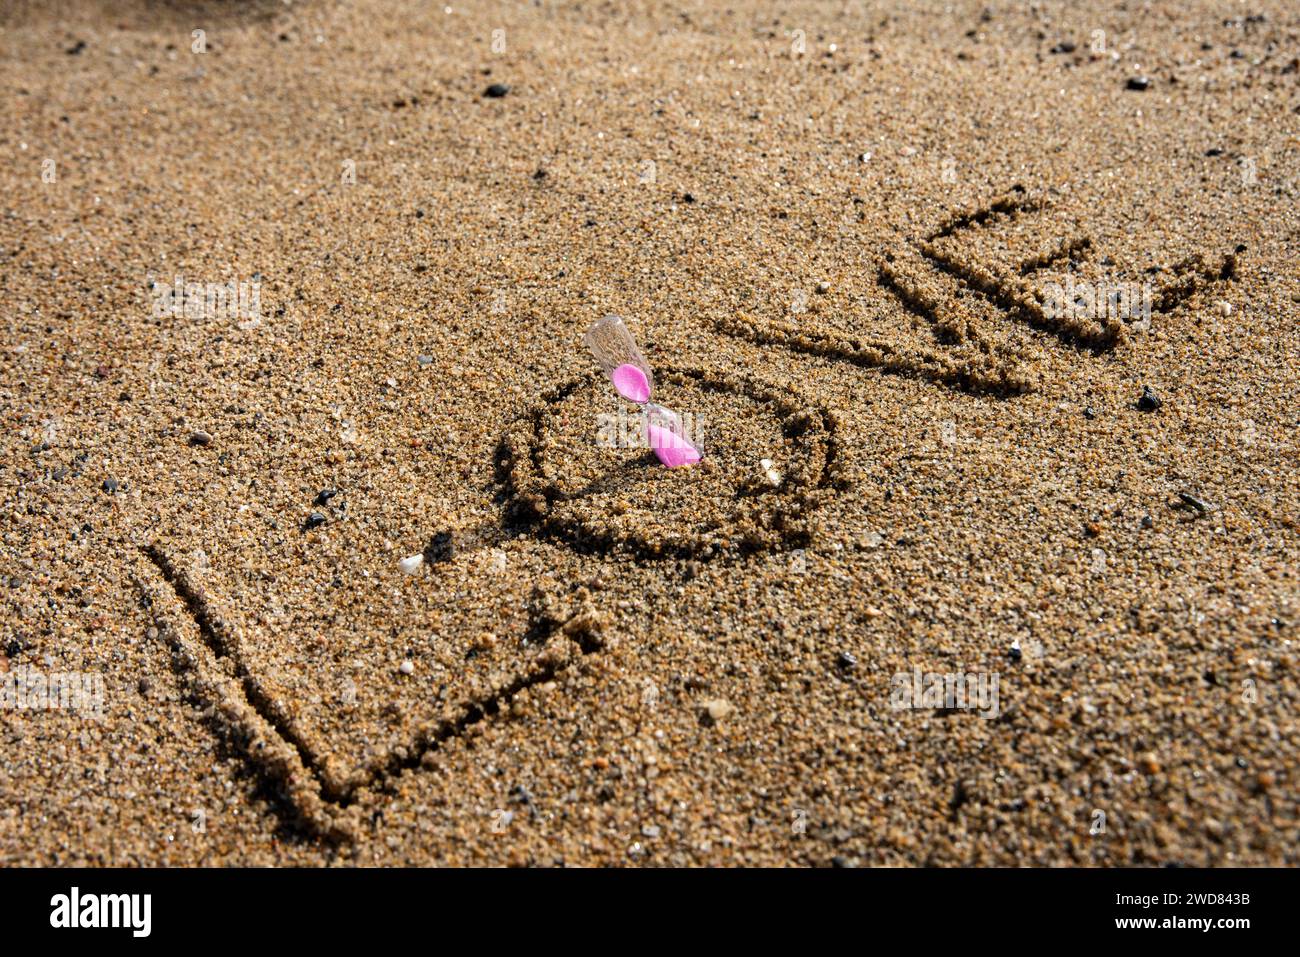 Zeitlose Liebe: „Liebe“ am Strand in einer rosafarbenen Sanduhr, wo Romantik auf den Sand ewiger Momente trifft Stockfoto